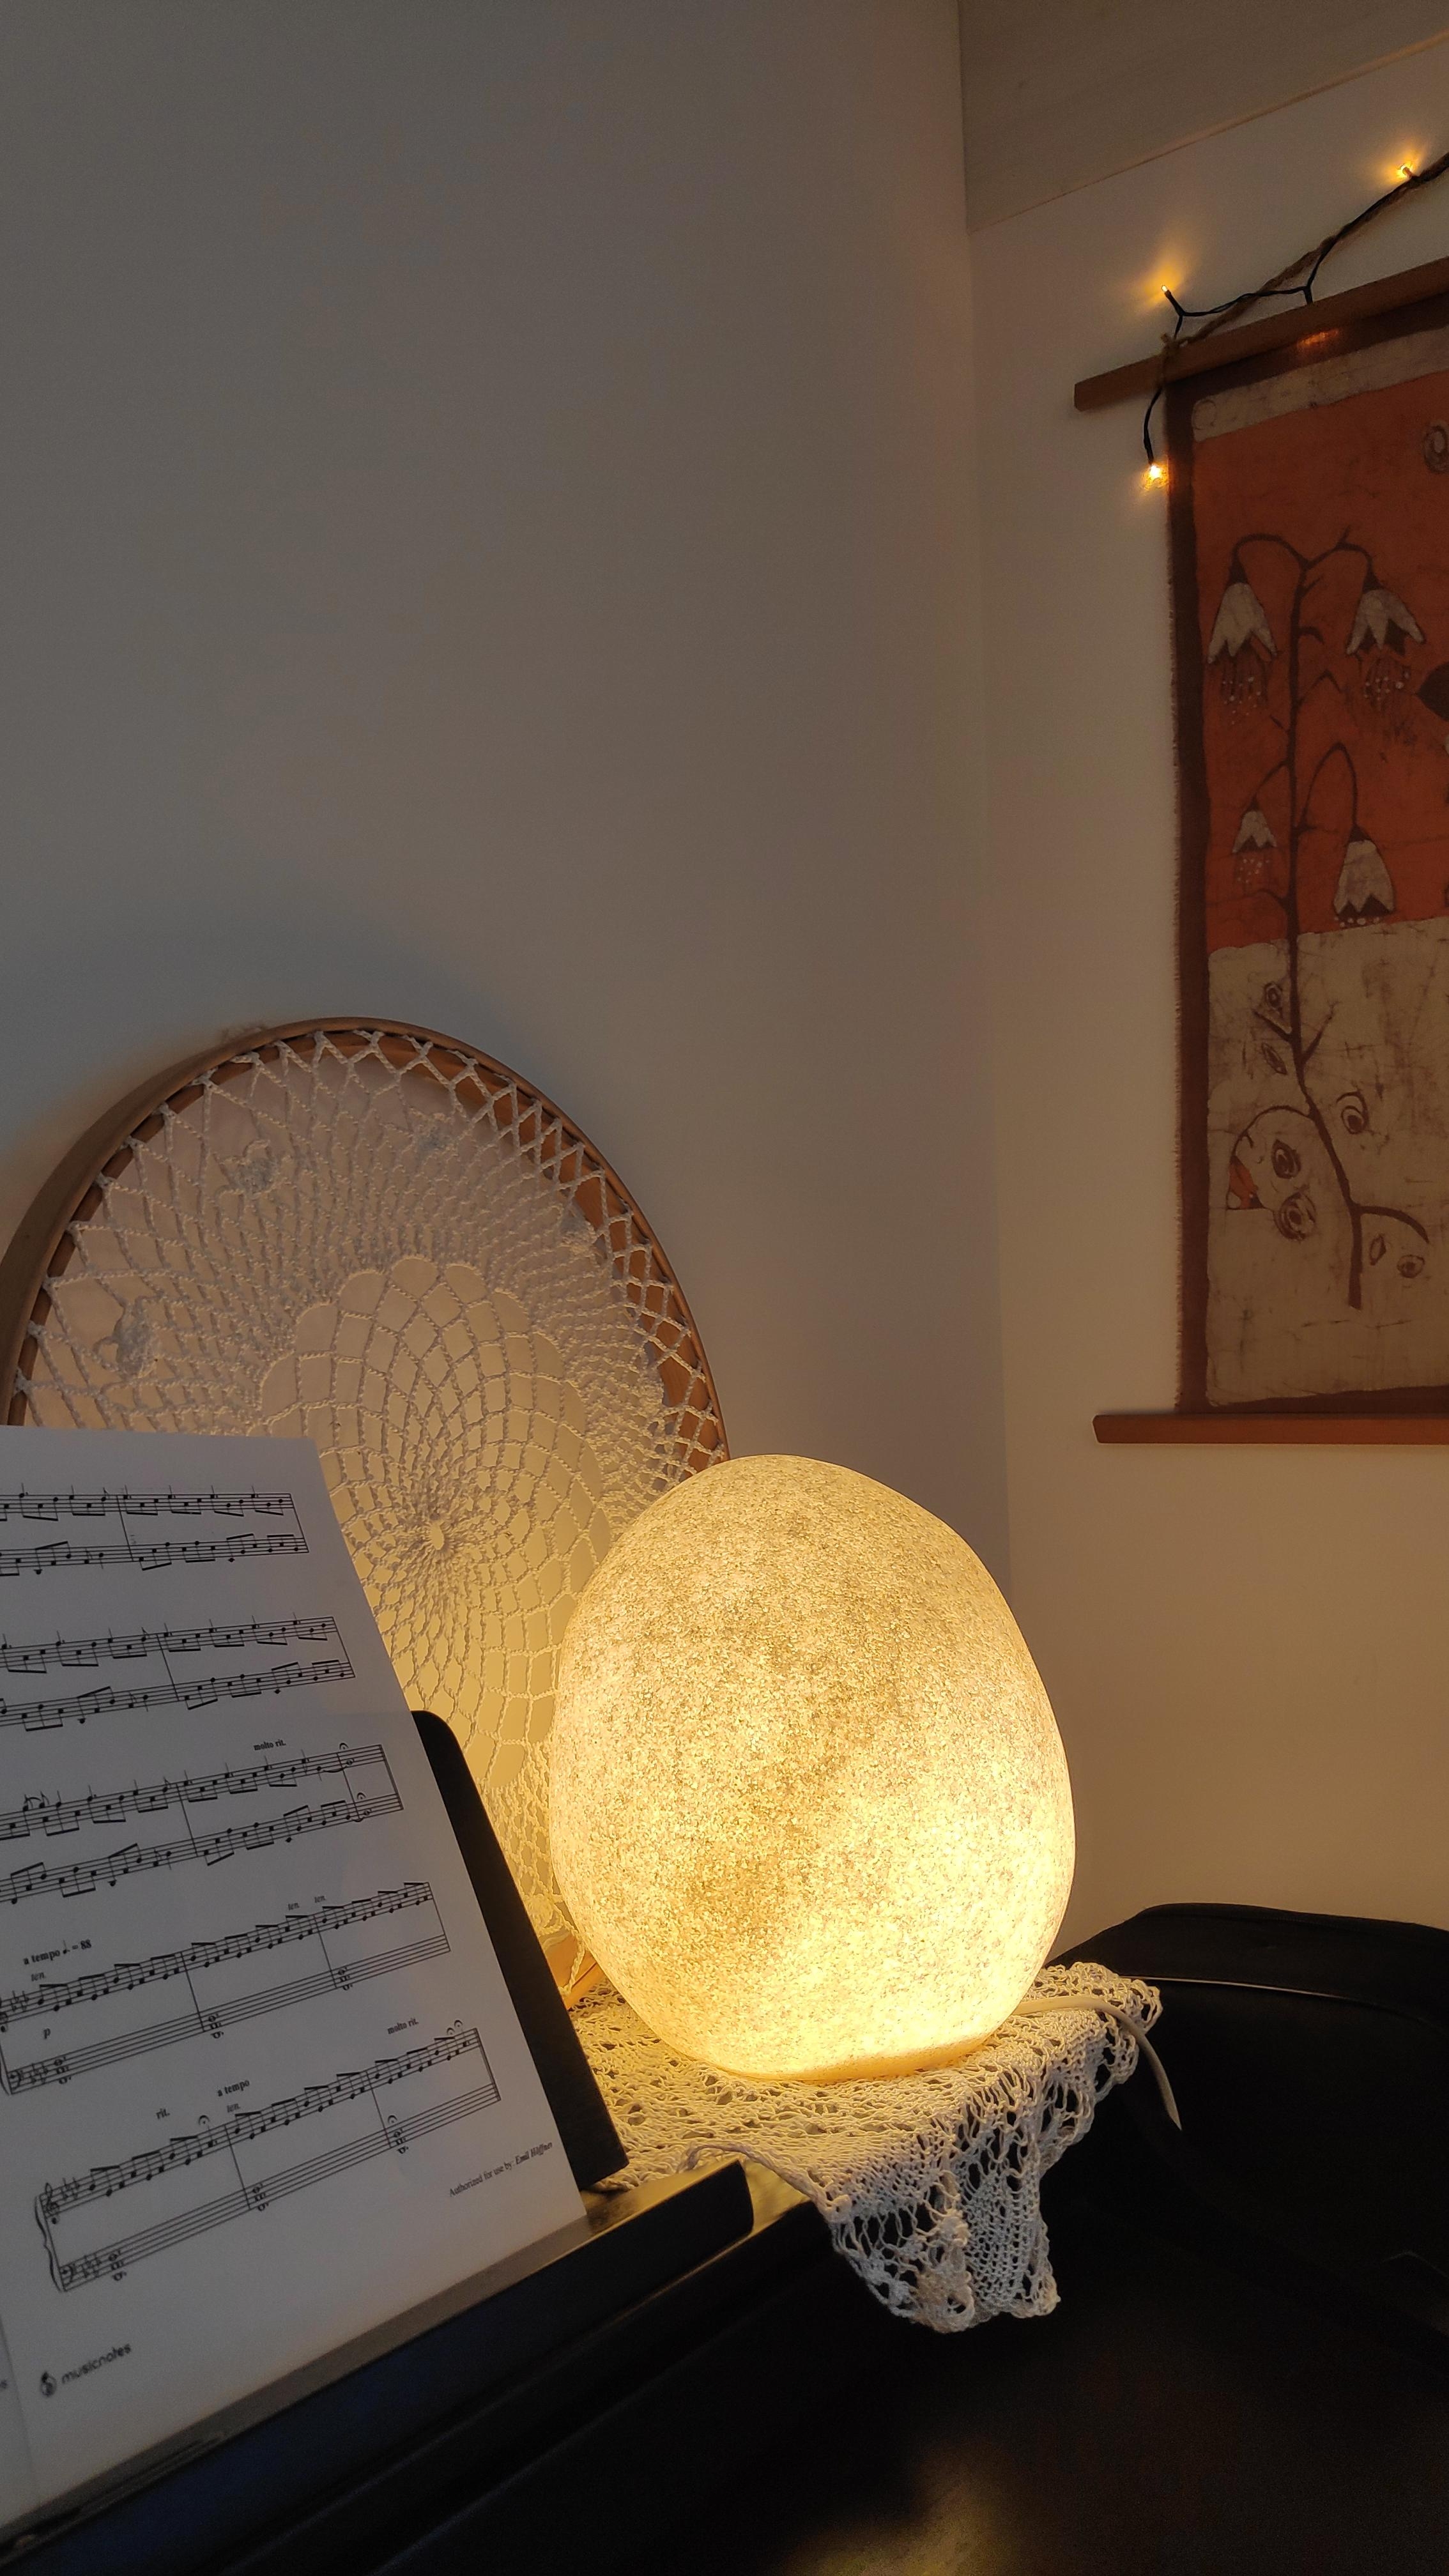 .Das Licht.
#Lampe #Steingut #Musik #Noten #Klavier #Serviette #gehäkelt #gestrickt